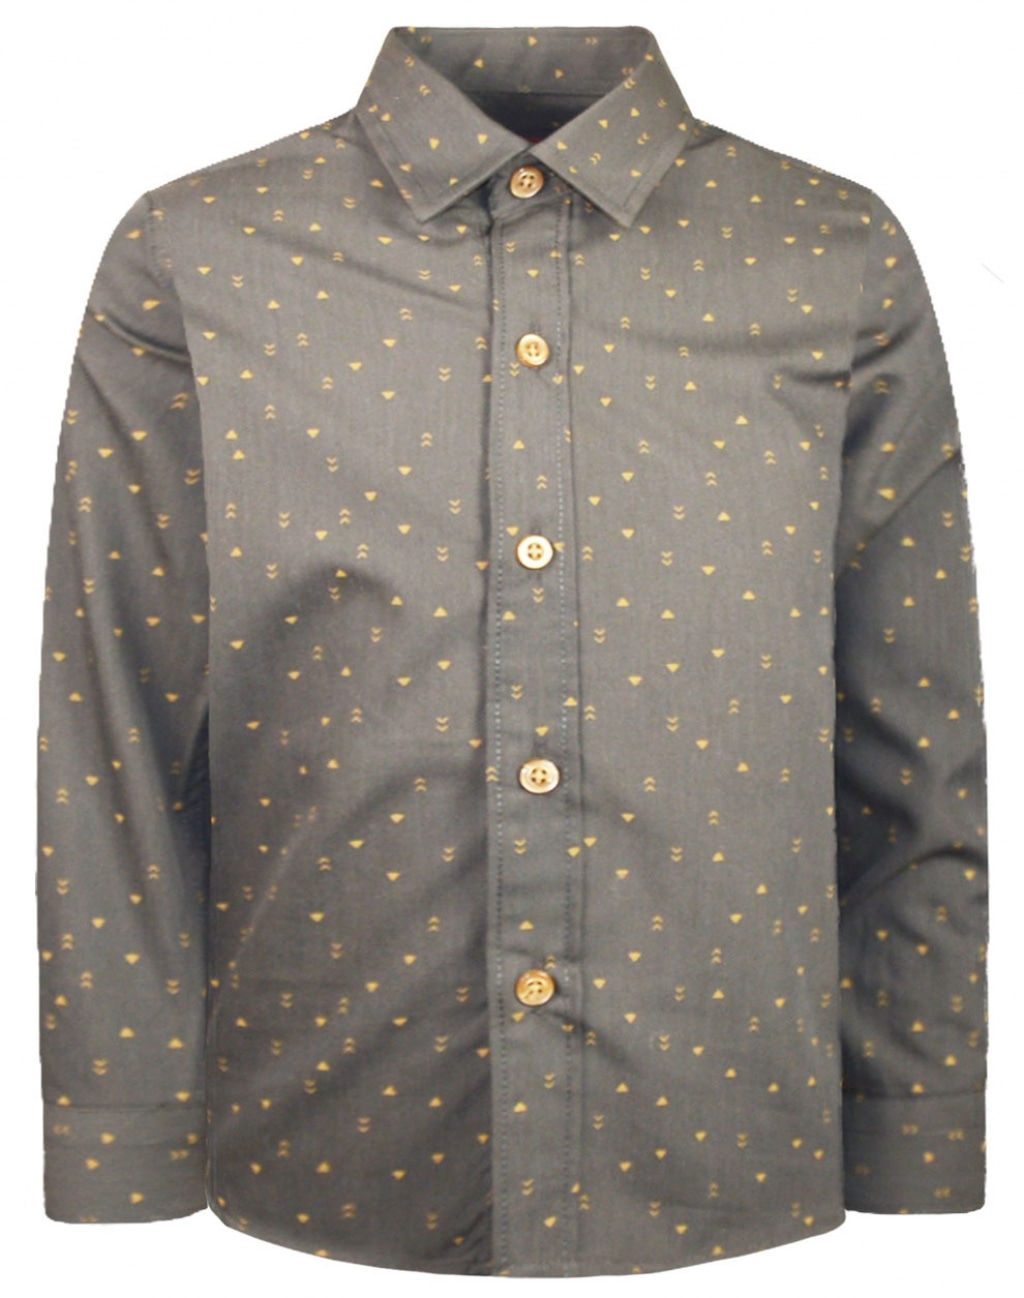 ΣΚ. ΓΚΡΙ Energiers Μοδάτο πουκάμισο σε ένα καταπληκτικό design με  διακόσμηση με μικροσχέδια σε όλη την επιφάνεια. - 13-121000-4 | Boogie